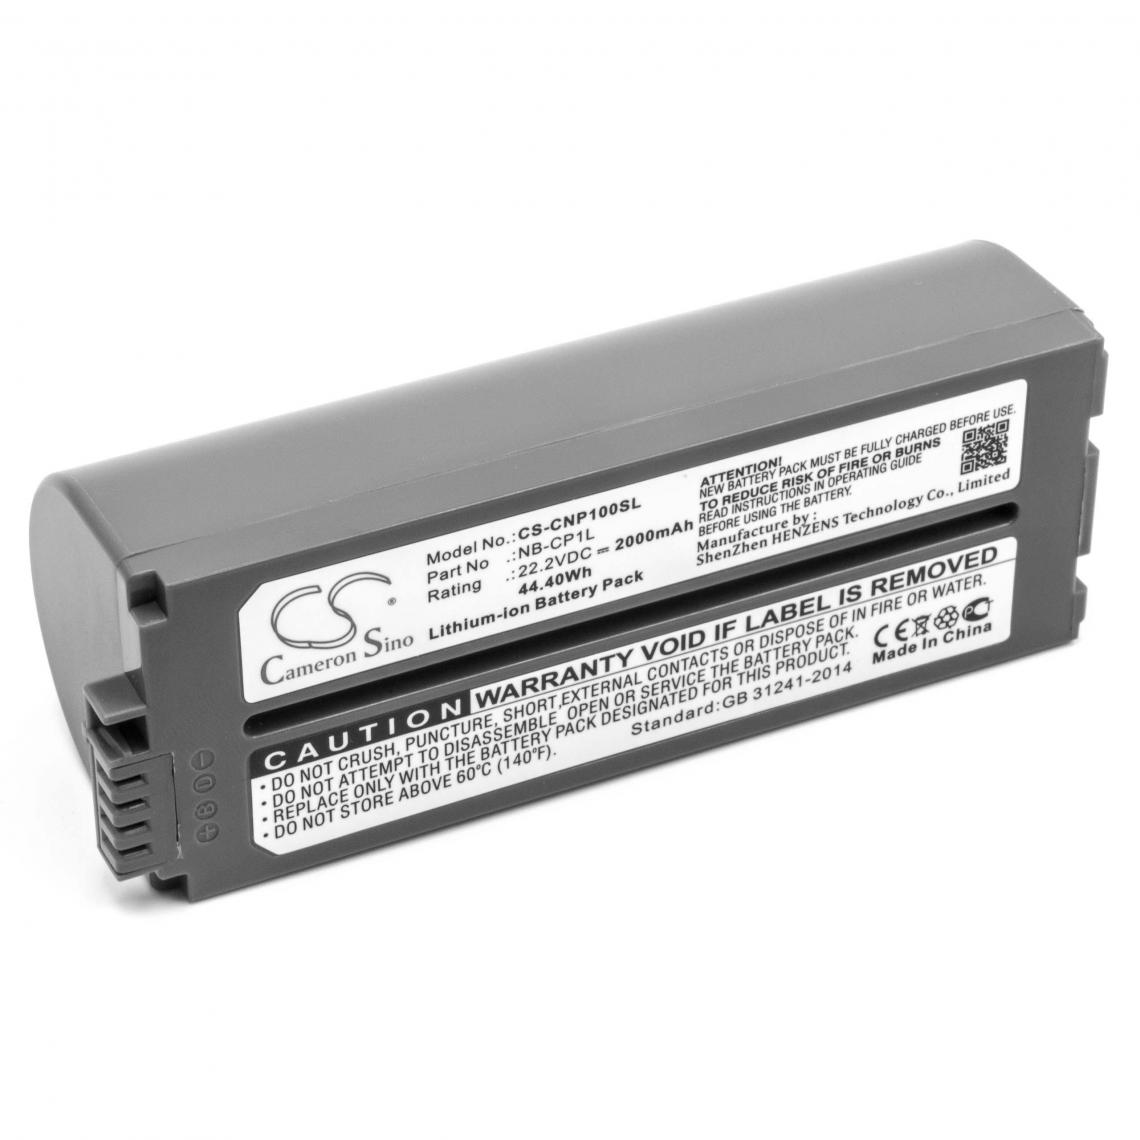 Vhbw - vhbw Li-Ion batterie 2000mAh (22.2V) pour imprimante photocopieur imprimante à étiquette Canon Selphy CP-770, CP-780, CP-790, CP-800, CP-810, CP-820 - Imprimante Jet d'encre